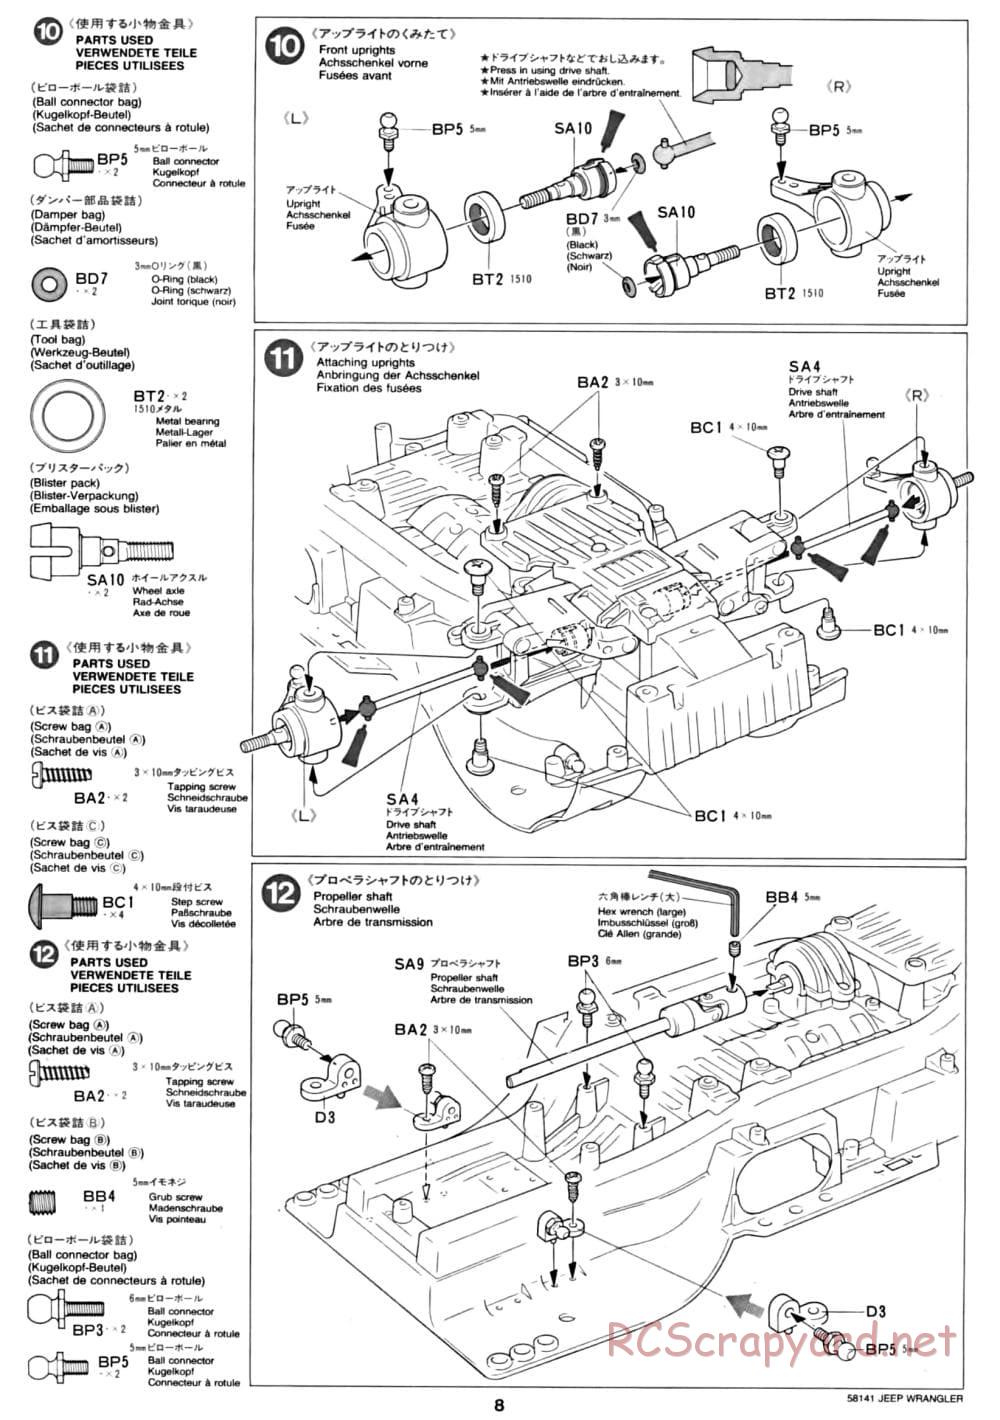 Tamiya - Jeep Wrangler - CC-01 Chassis - Manual - Page 8